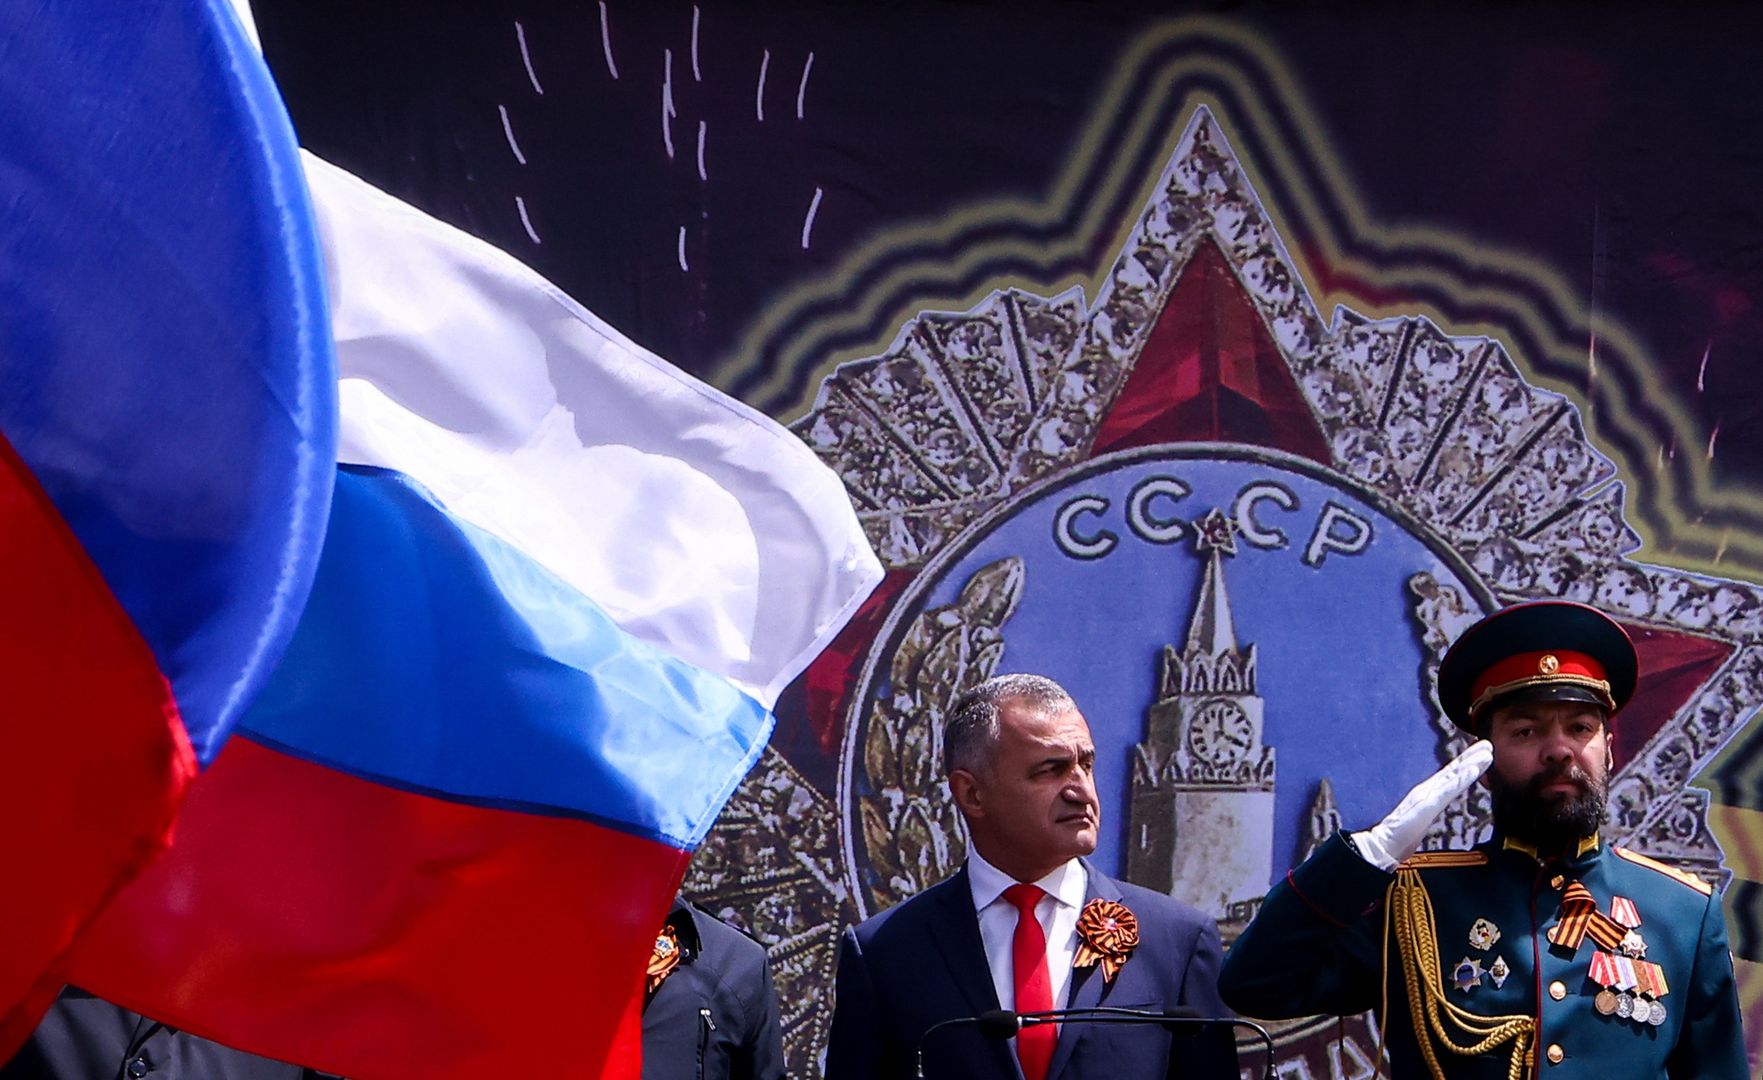 Rosja anektuje separatystyczną republikę? "Omawiamy te sprawy"